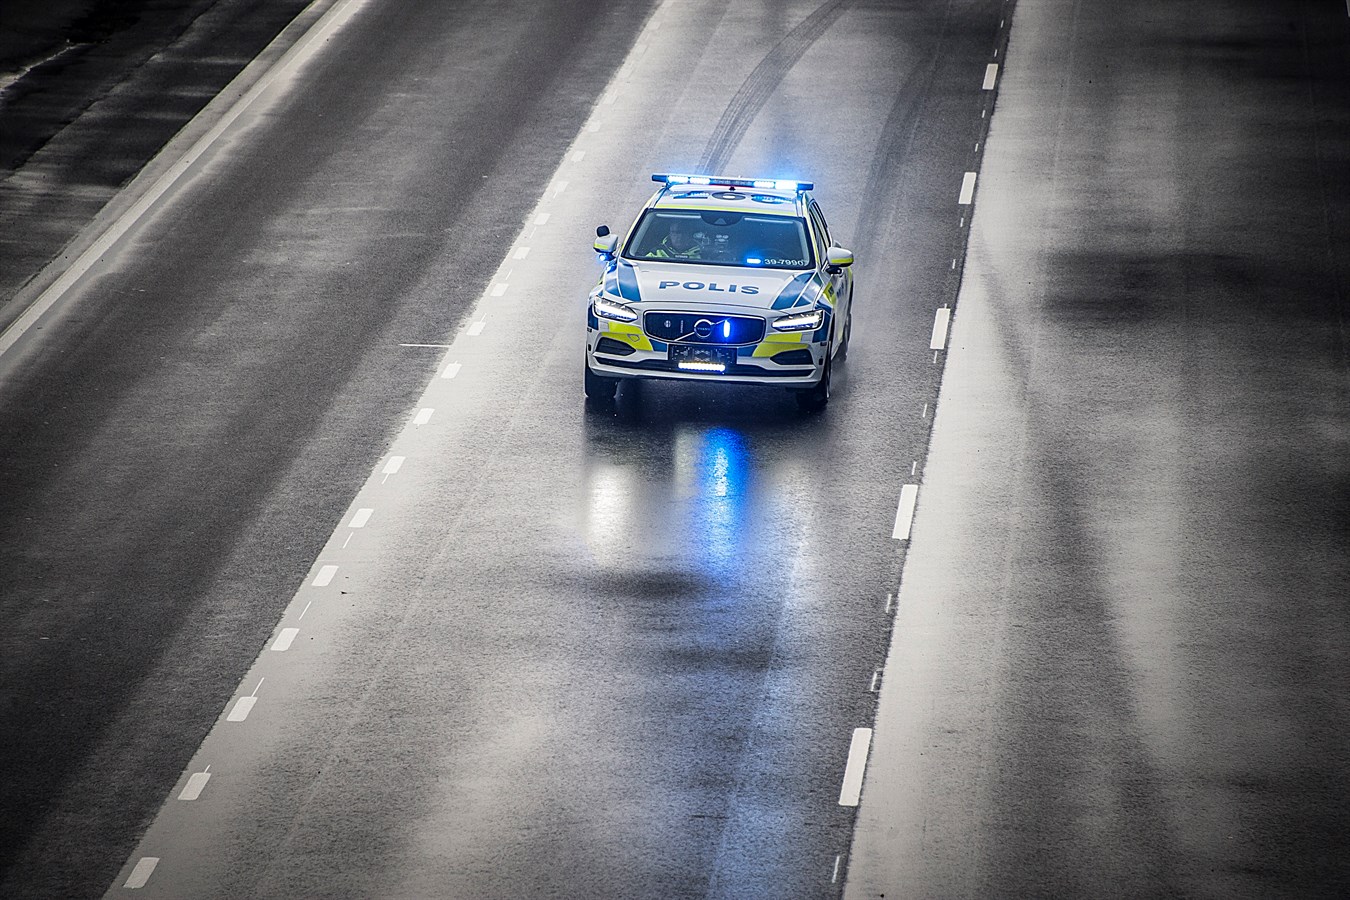 Volvo V90 as a police car